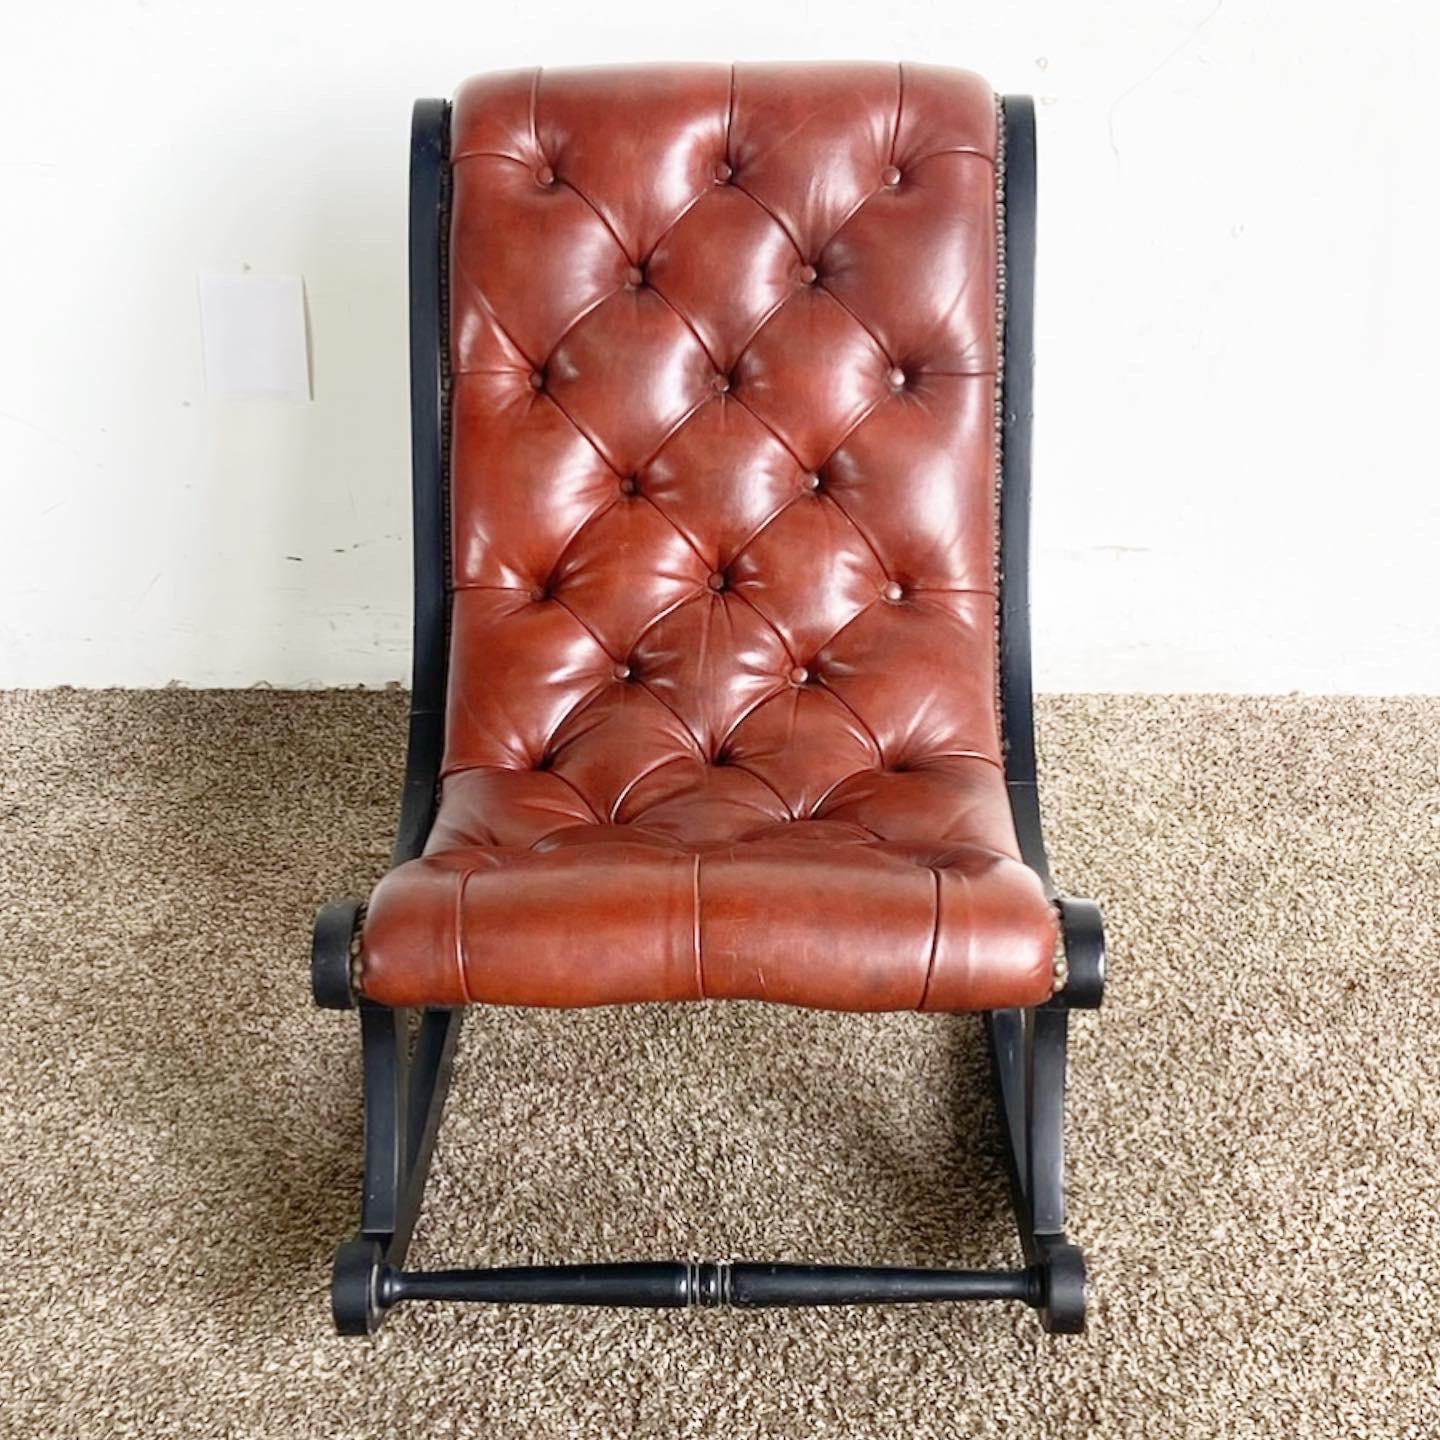 Faites l'expérience d'un luxe intemporel avec notre fauteuil à bascule en cuir touffeté Regency, une pièce classique offrant une élégance raffinée et un confort optimal.

Doté d'une somptueuse assise en cuir marron, richement touffeté pour un design